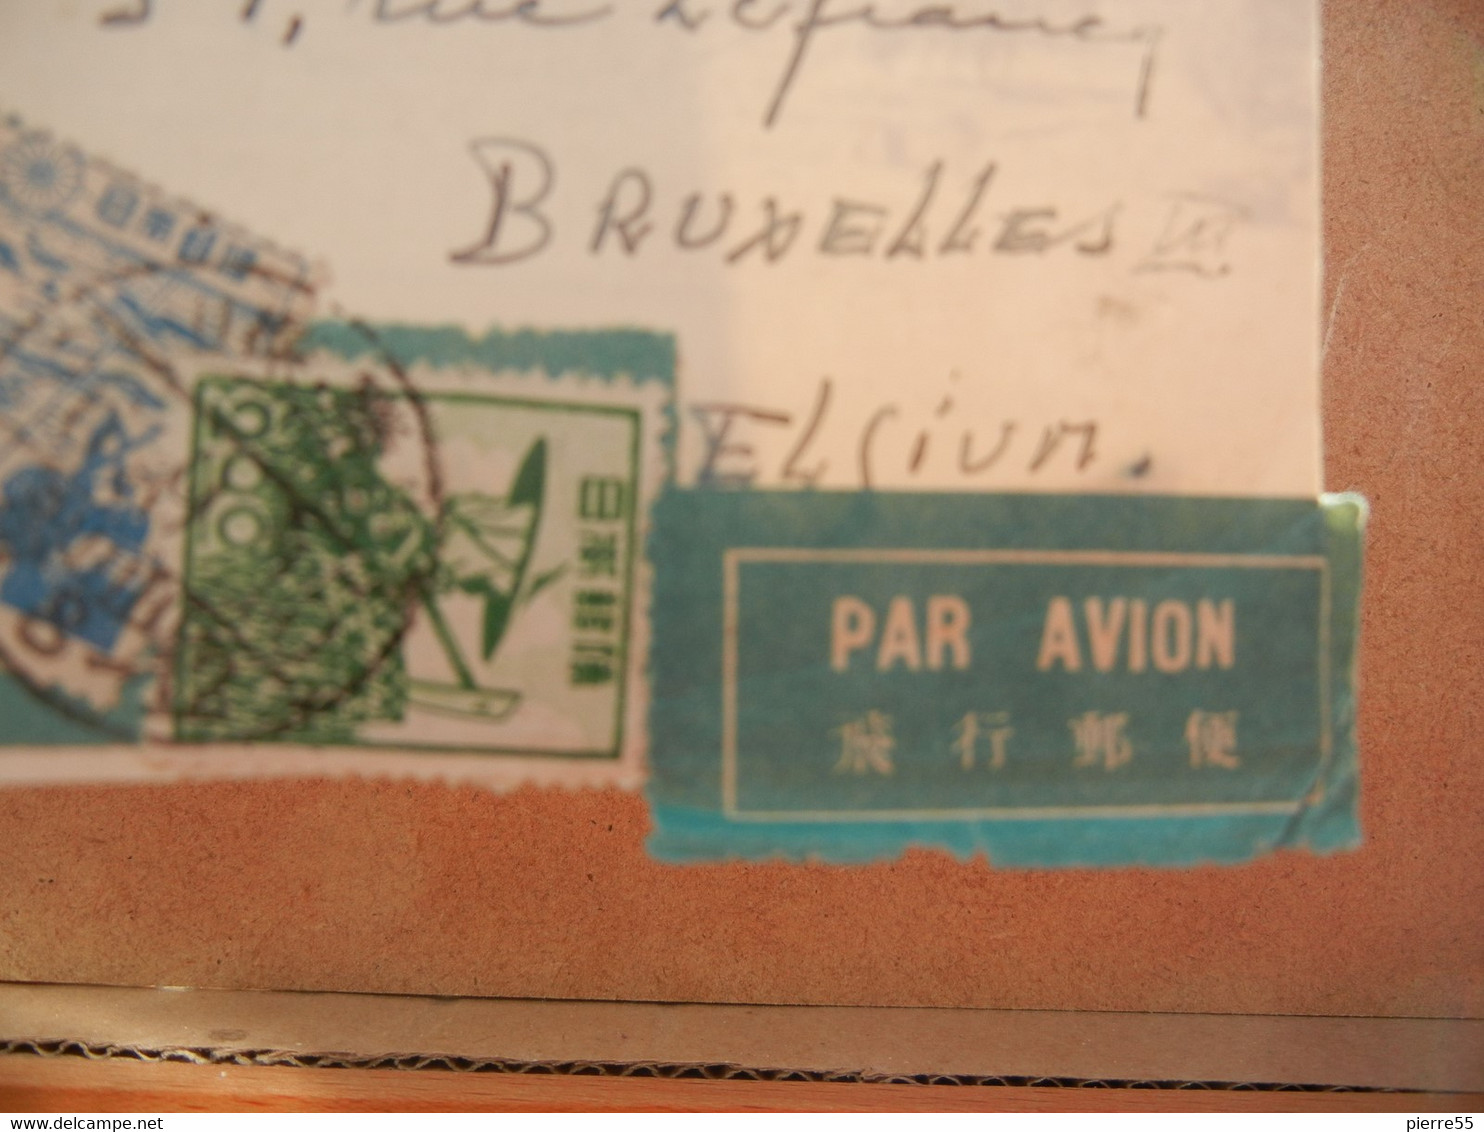 CPA JAPON - VIEW FROM THE SECOND FLOOR FUJI-VIEW HOTEL - 5 Timbres 3oblit Japon + Oblit Bruxelles 1951 + "par Avion" - Storia Postale